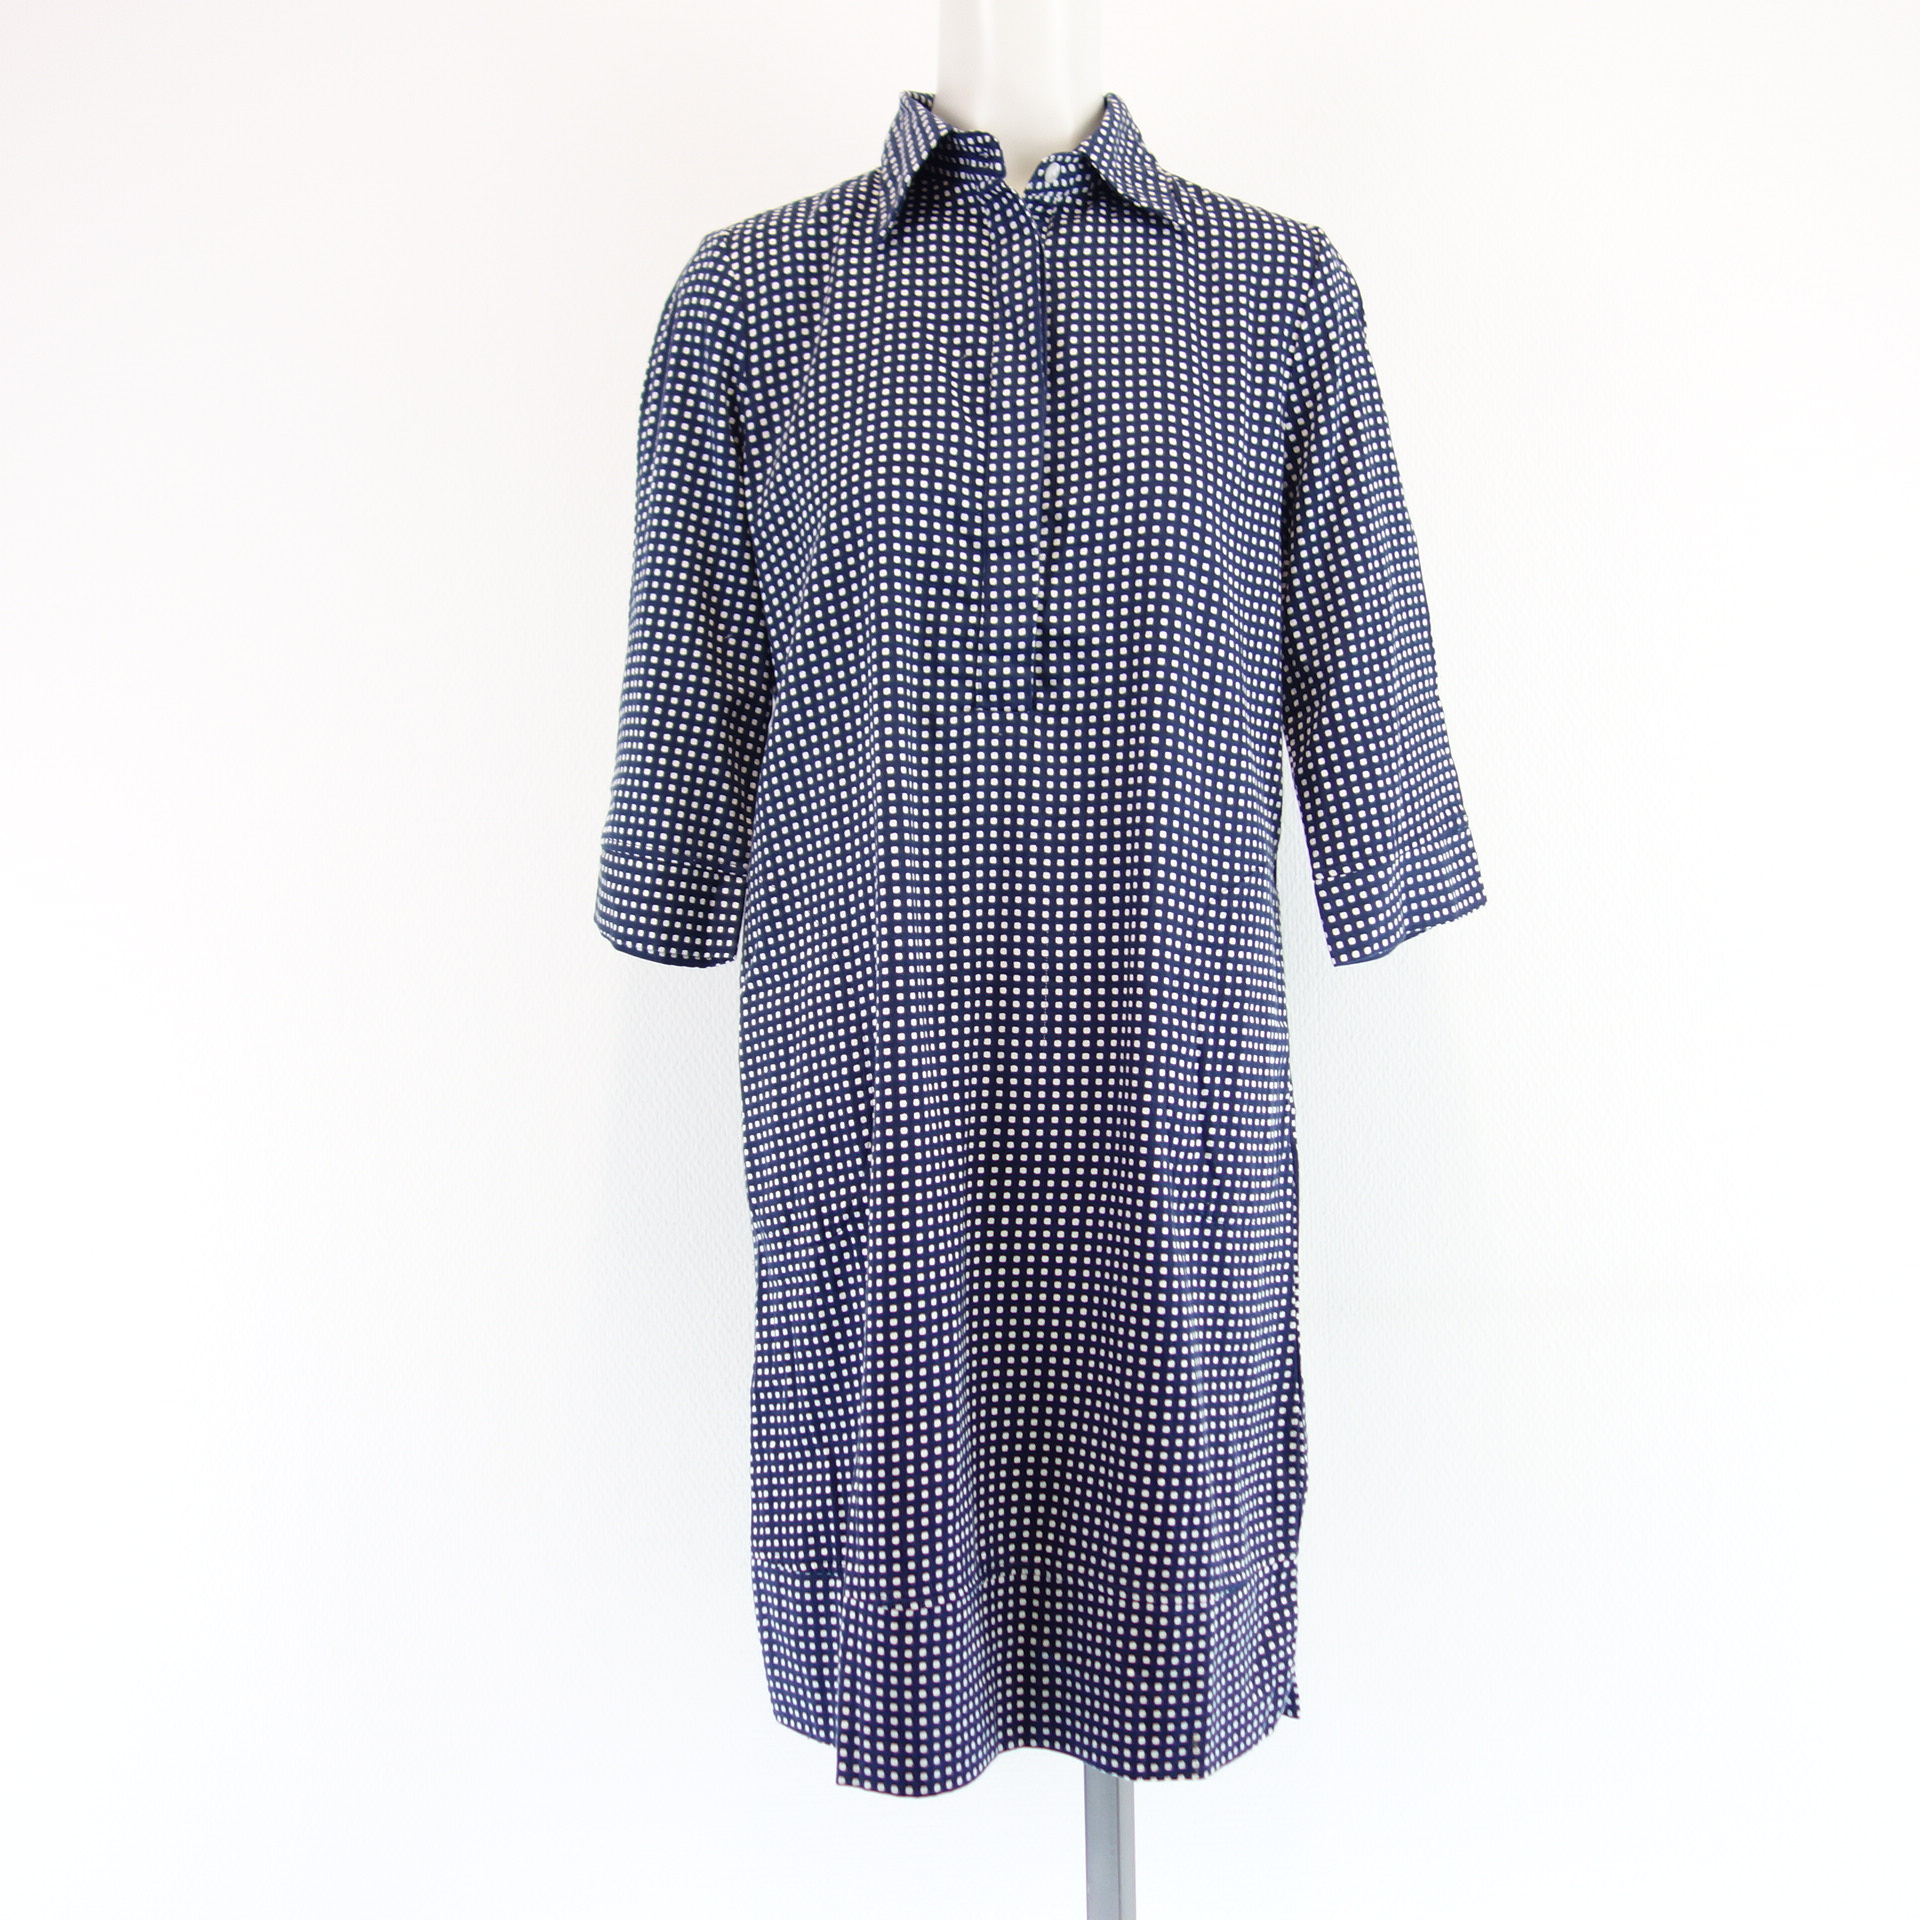 LA SALLE Damen Kleid Tunika Hemdkleid Blau Weiß Kariert Größe S mit Taschen